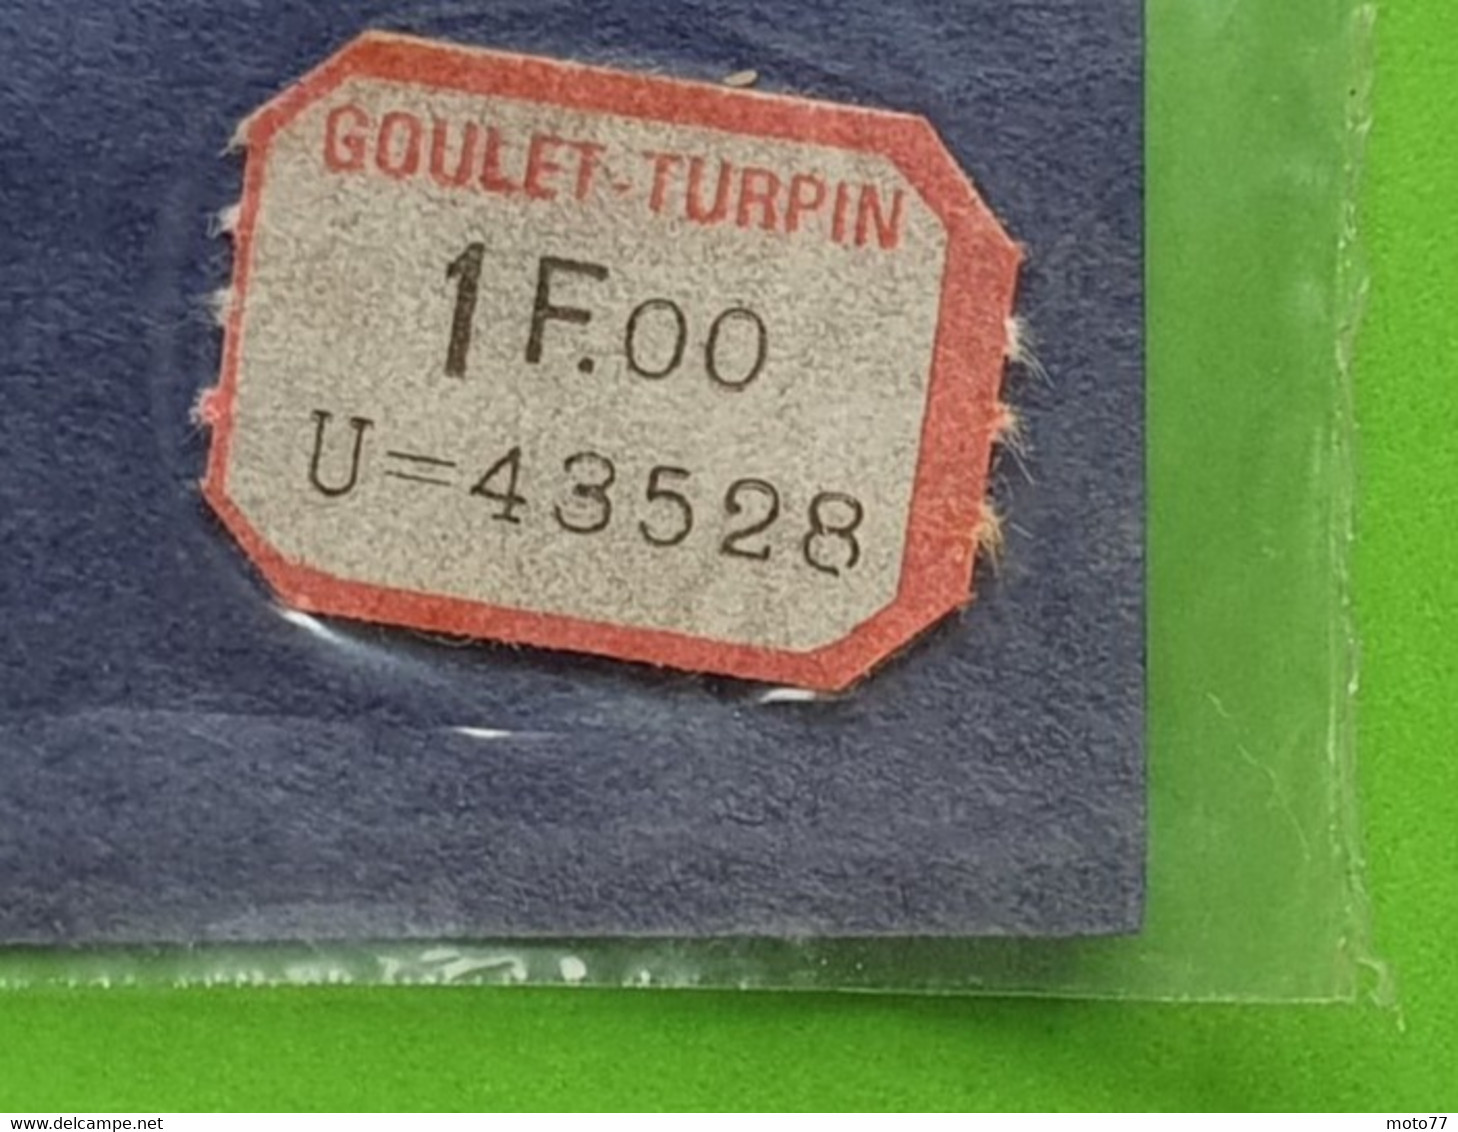 Ancien NAPPERON ovale - environ 30 x 20 cm - Plastique - "neuf de stock" magasin GOULET TURPIN Reims - vers 1960